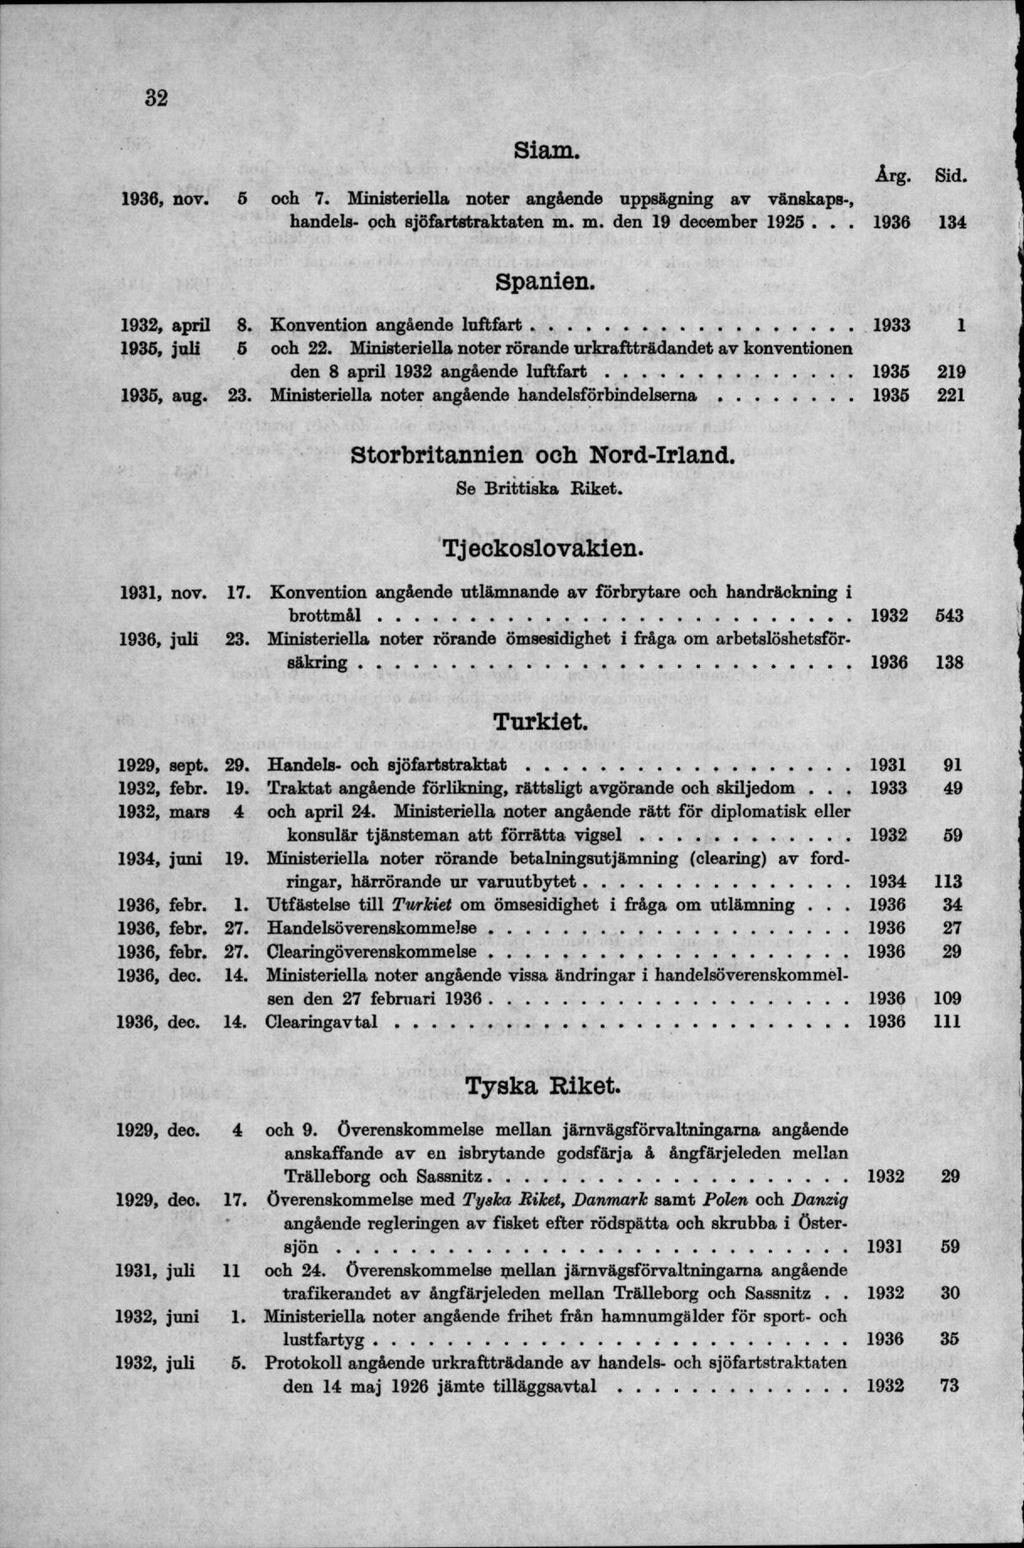 Siam. 1936, nov. 5 och 7. Ministeriella noter angående uppsägning av vänskaps-, handels- och sjöfartstraktaten m. m. den 19 december 1926... 1936 134 Spanien. 1932, april 8.